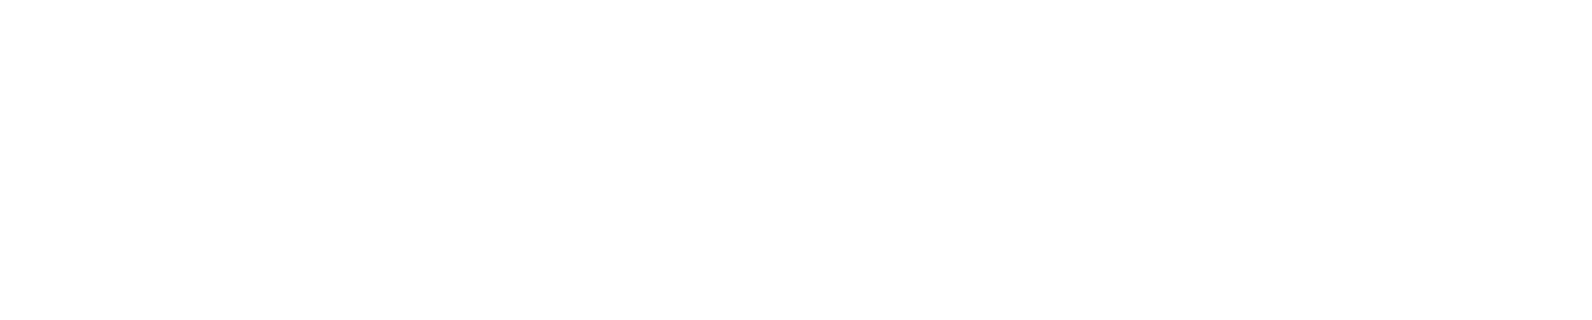 ZUSÄTZLICH -40 % AB 1 ARTIKEL* ZUSÄTZLICH -50 % AB 2 ARTIKEL*